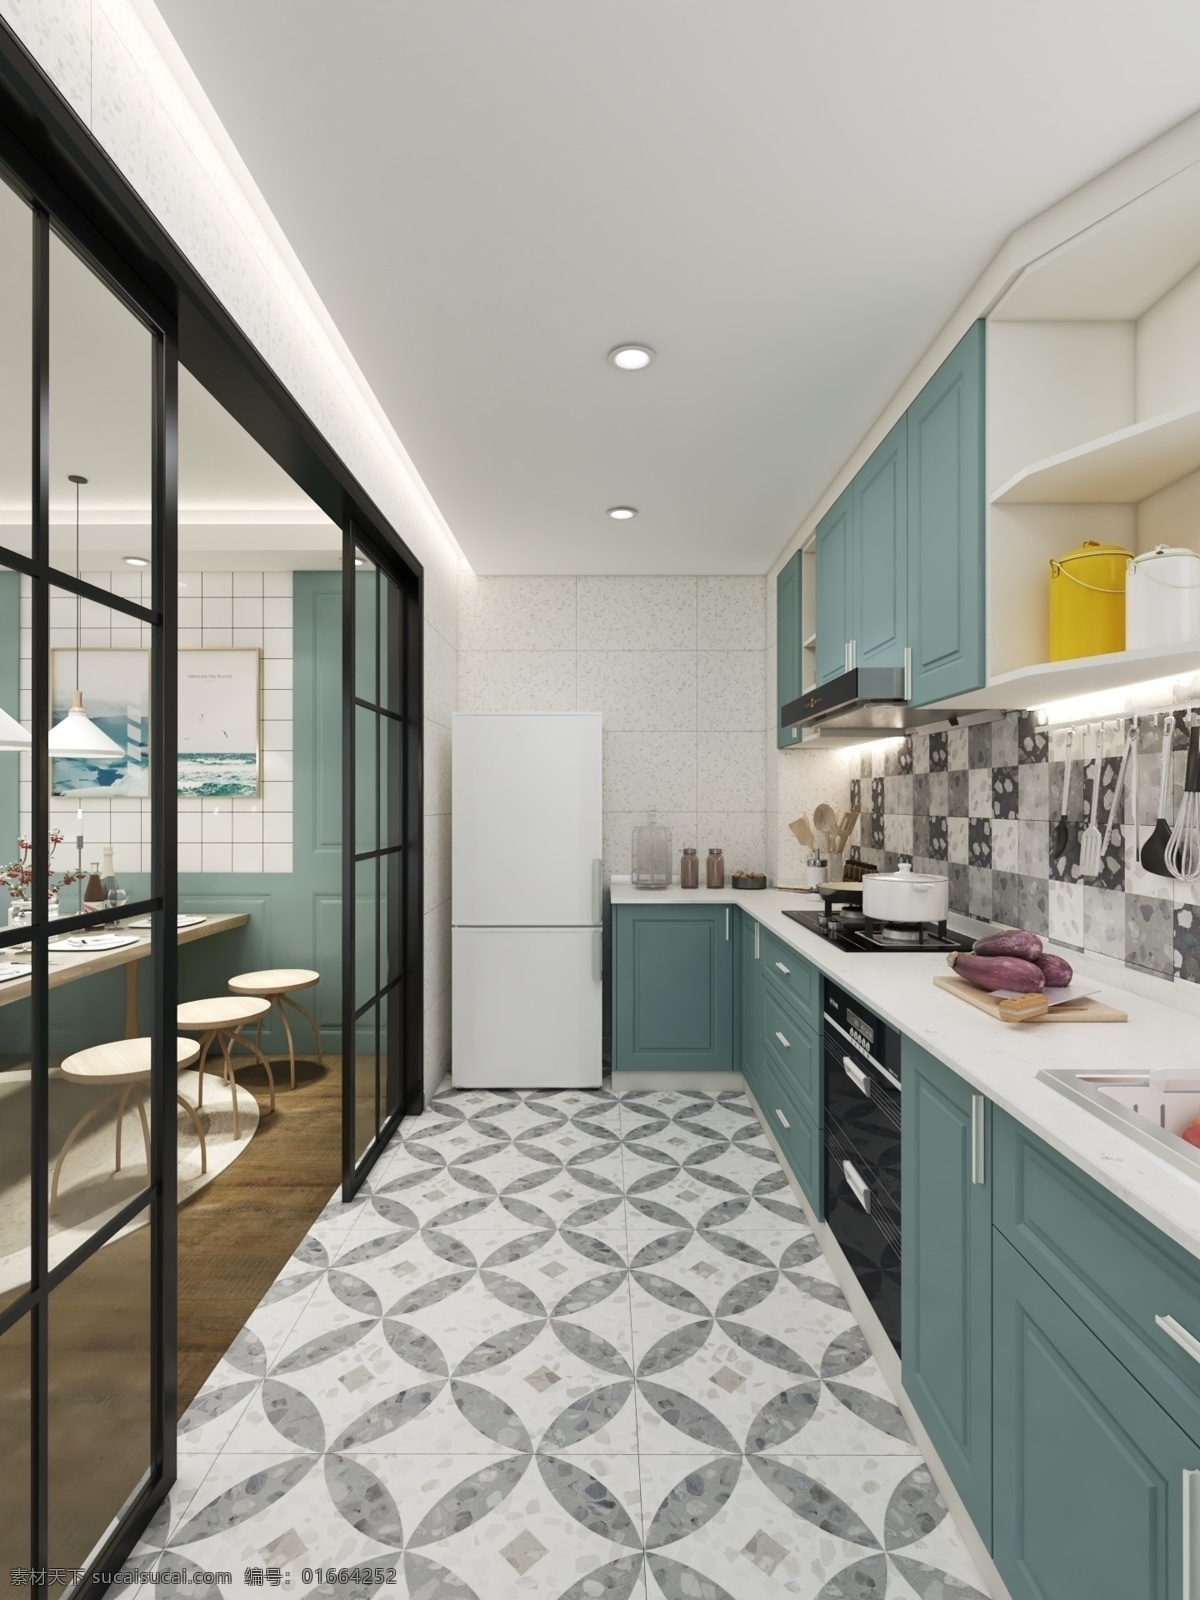 现代风格厨房 现代风格 厨房 橱柜 室内设计 居家 柜子 地柜 吊柜 空间设计 环境设计